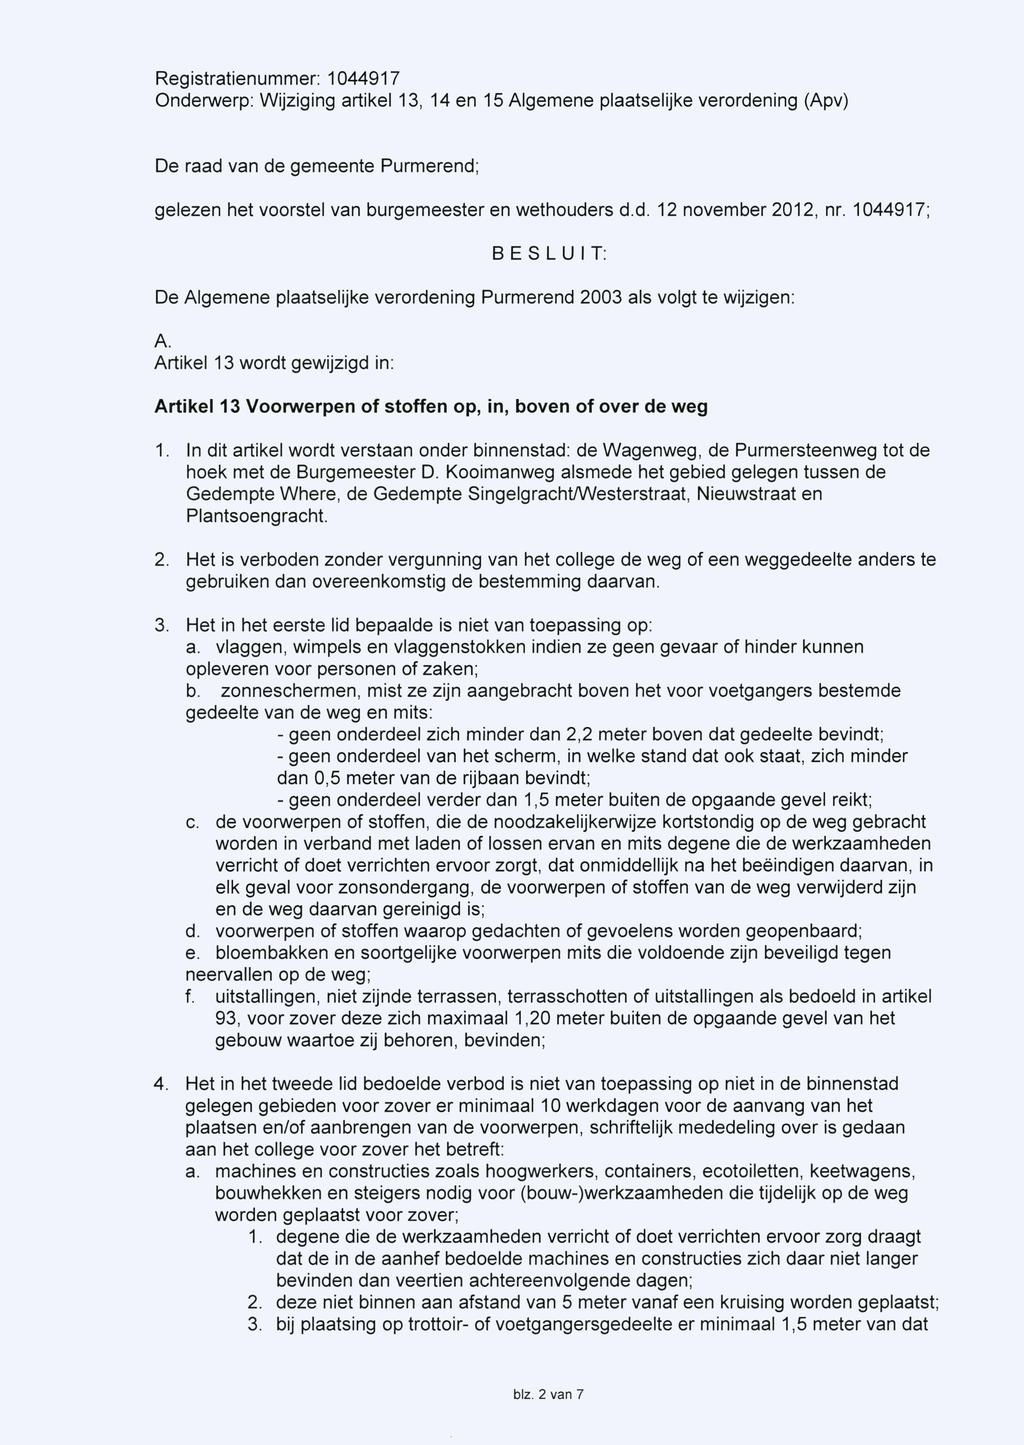 De raad van de gemeente Purmerend; gelezen het voorstel van burgemeester en wethouders d.d. 12 november 2012, nr.